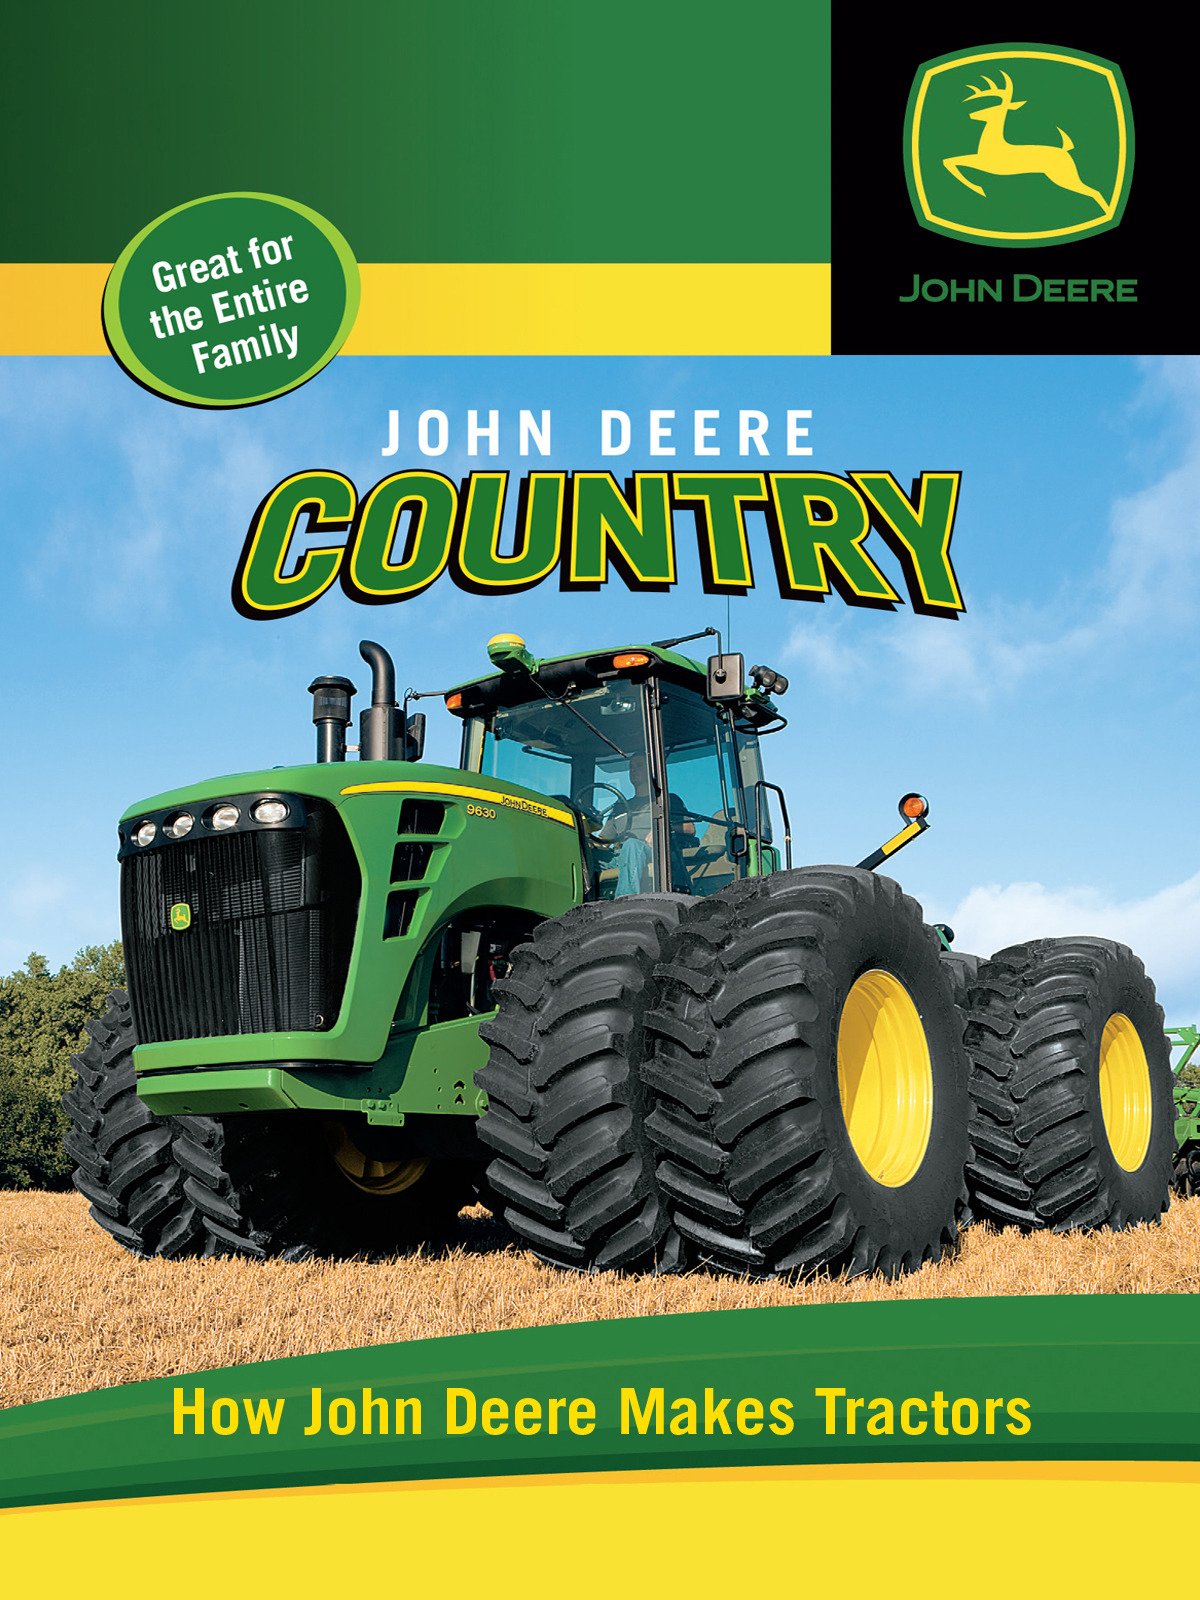 Amazon.com: John Deere Country - How John Deere Makes Tractors: Jeff ...